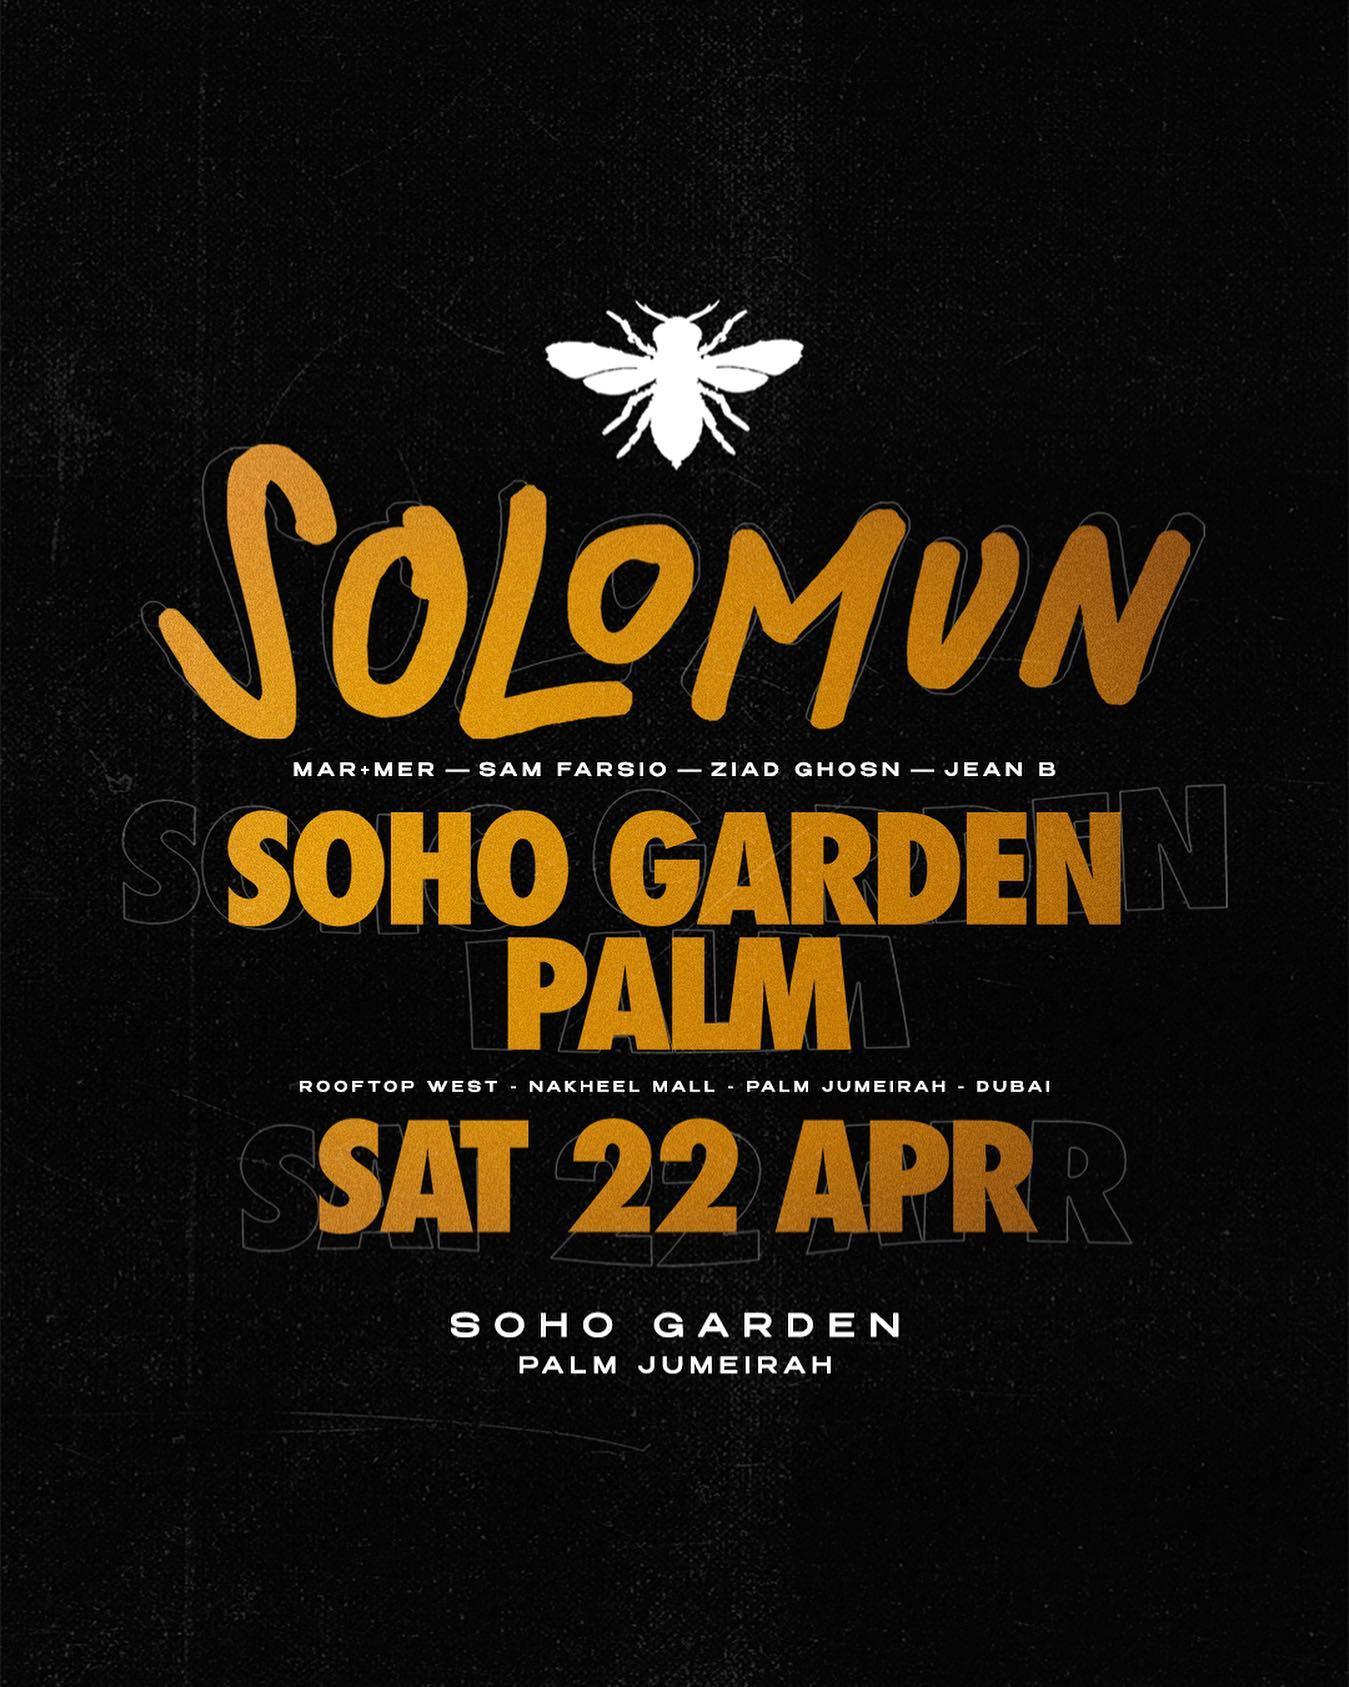 Solomun Season Opening at Soho Garden Palm Jumeirah